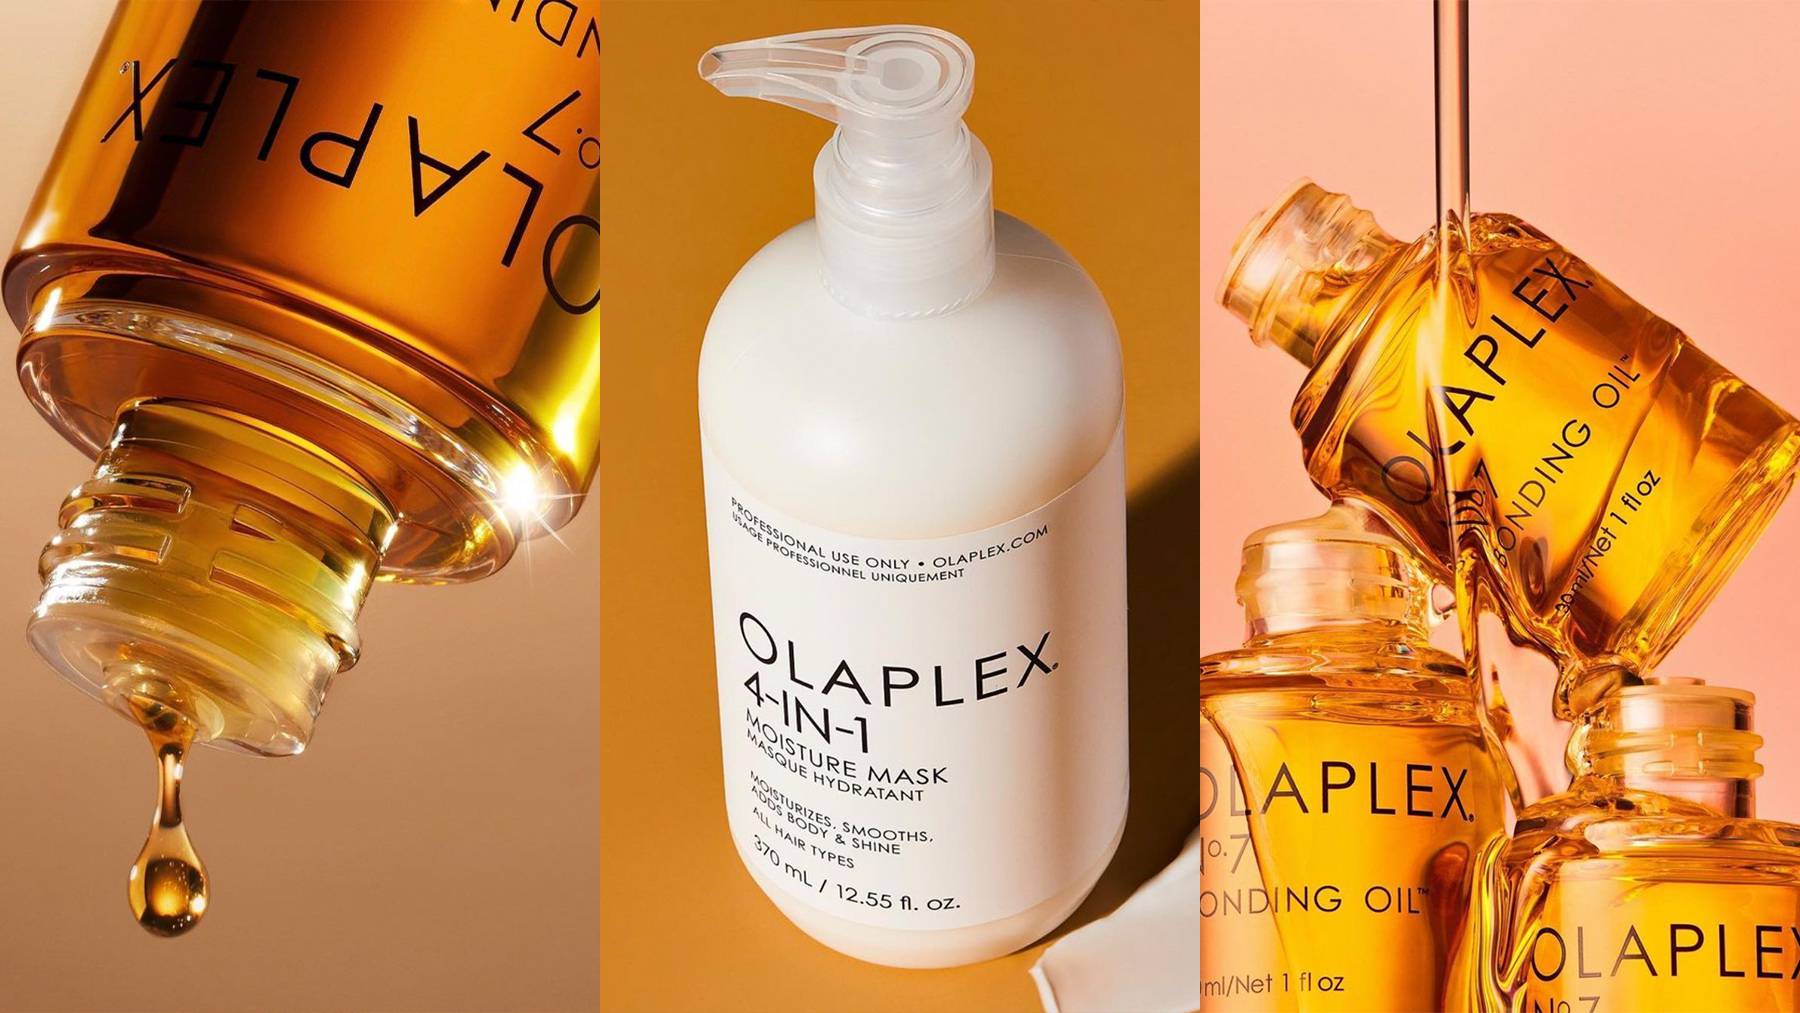 Olaplex hair repair-focused products.